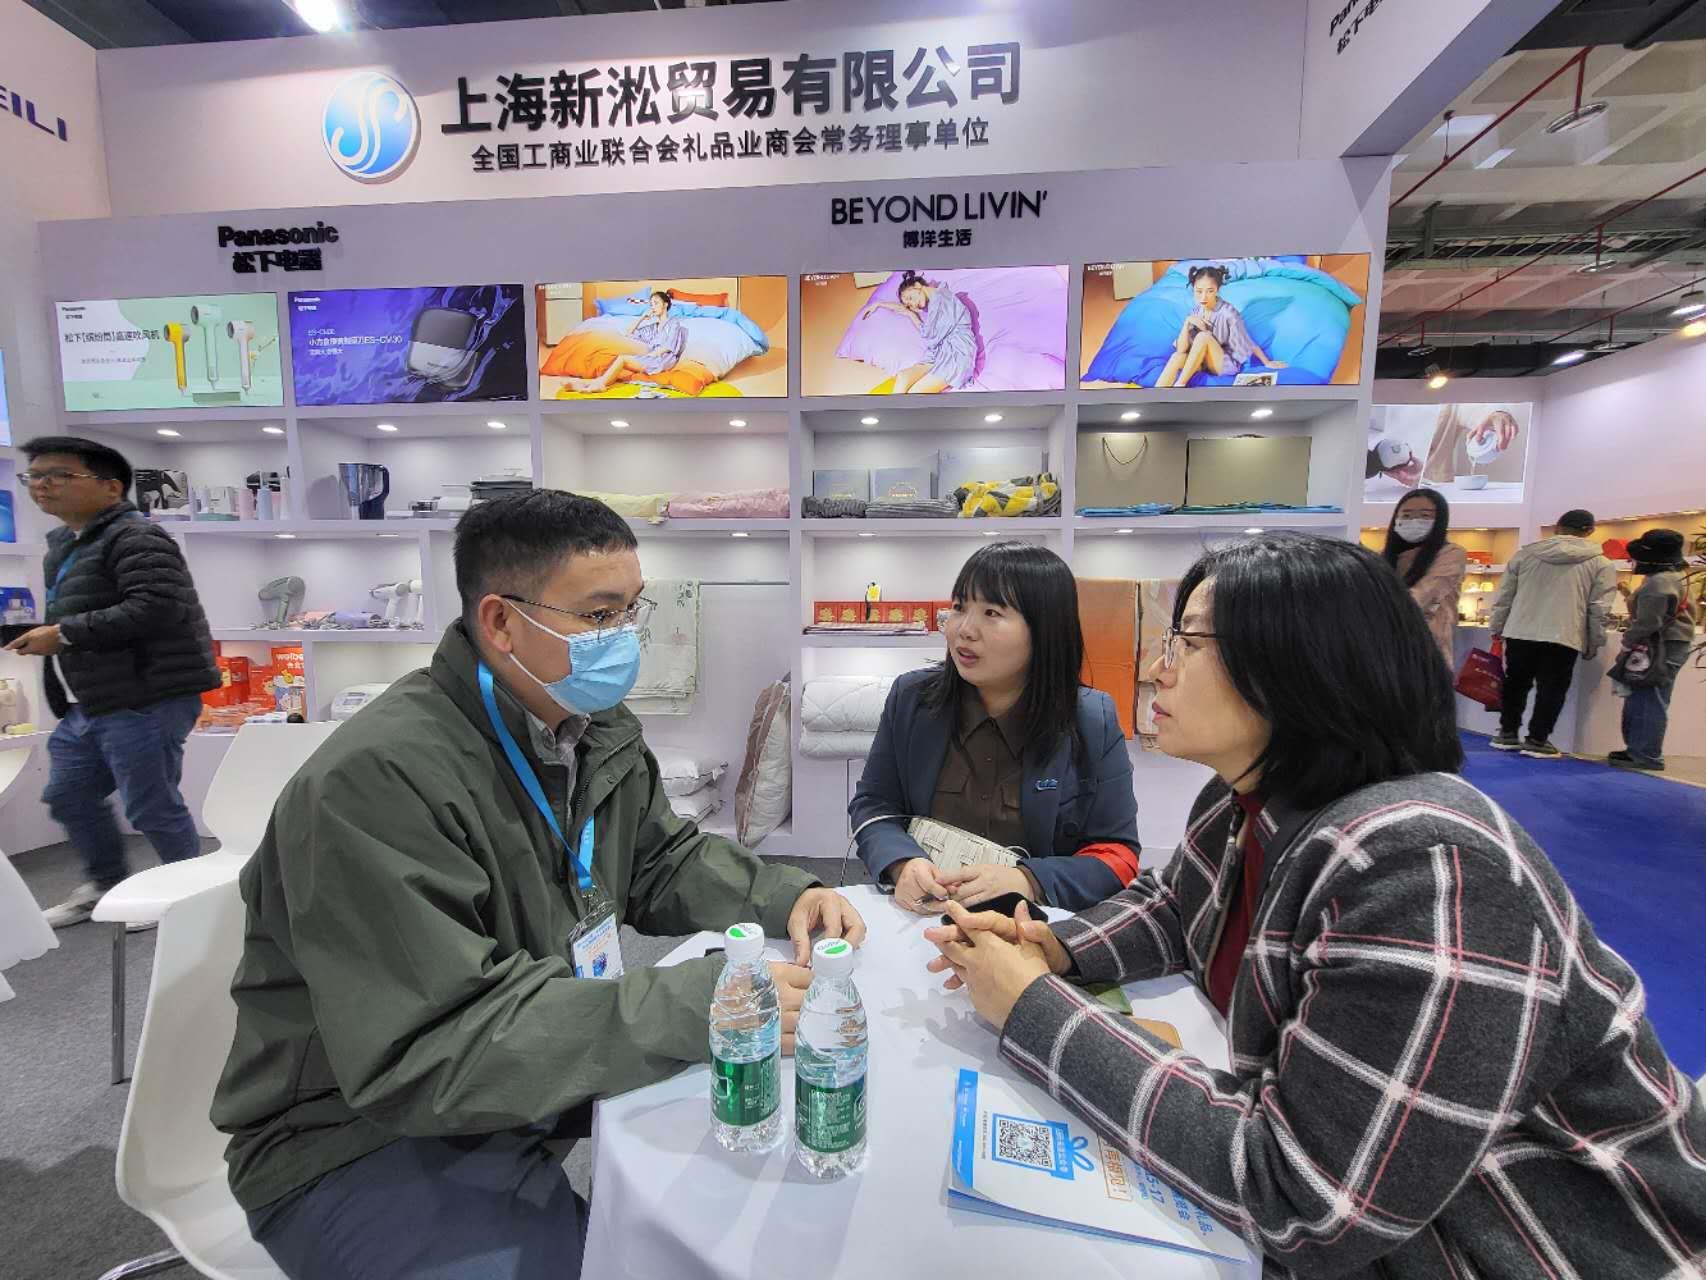 인천경제무역대표처가 지난 3월 20일부터 22일까지 3일간 중국 베이징에서 투자유치와 인천 기업제품 판로개척을 위한 영업 상담(sales call)을 펼쳤다